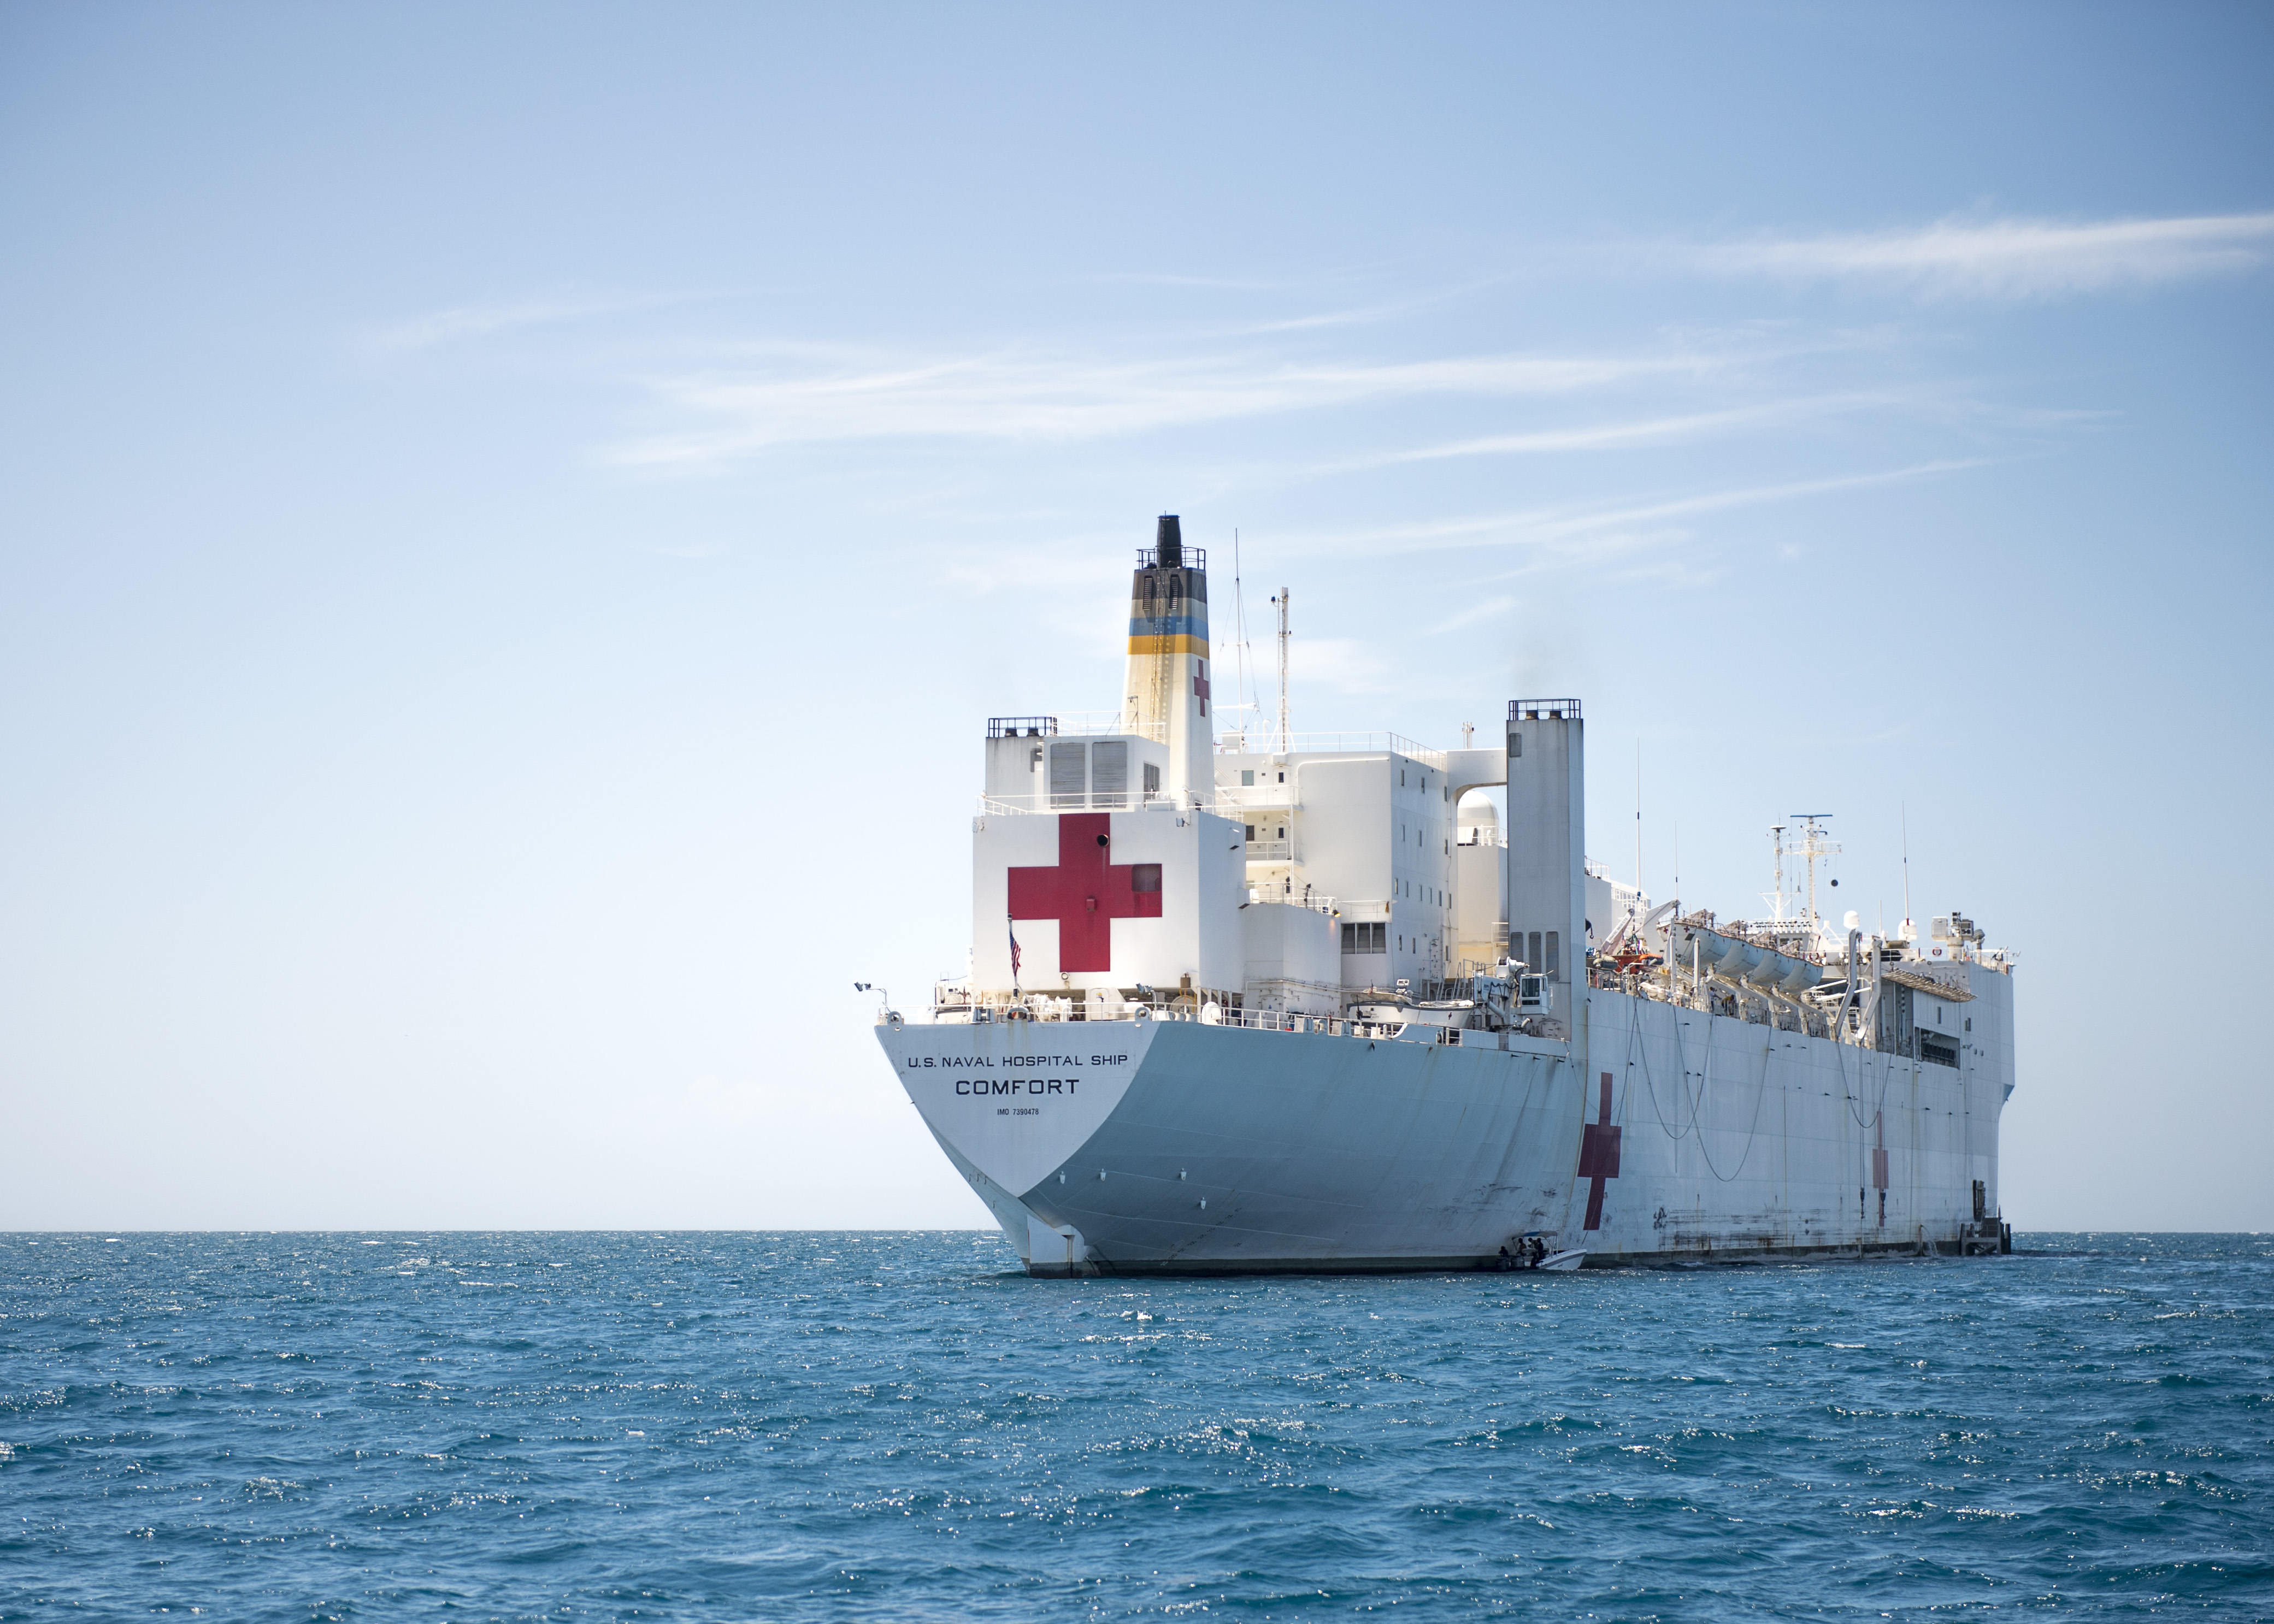 Embajada de los EE.UU. y Ministerio de Defensa anuncian llegada buque hospital Comfort a RD